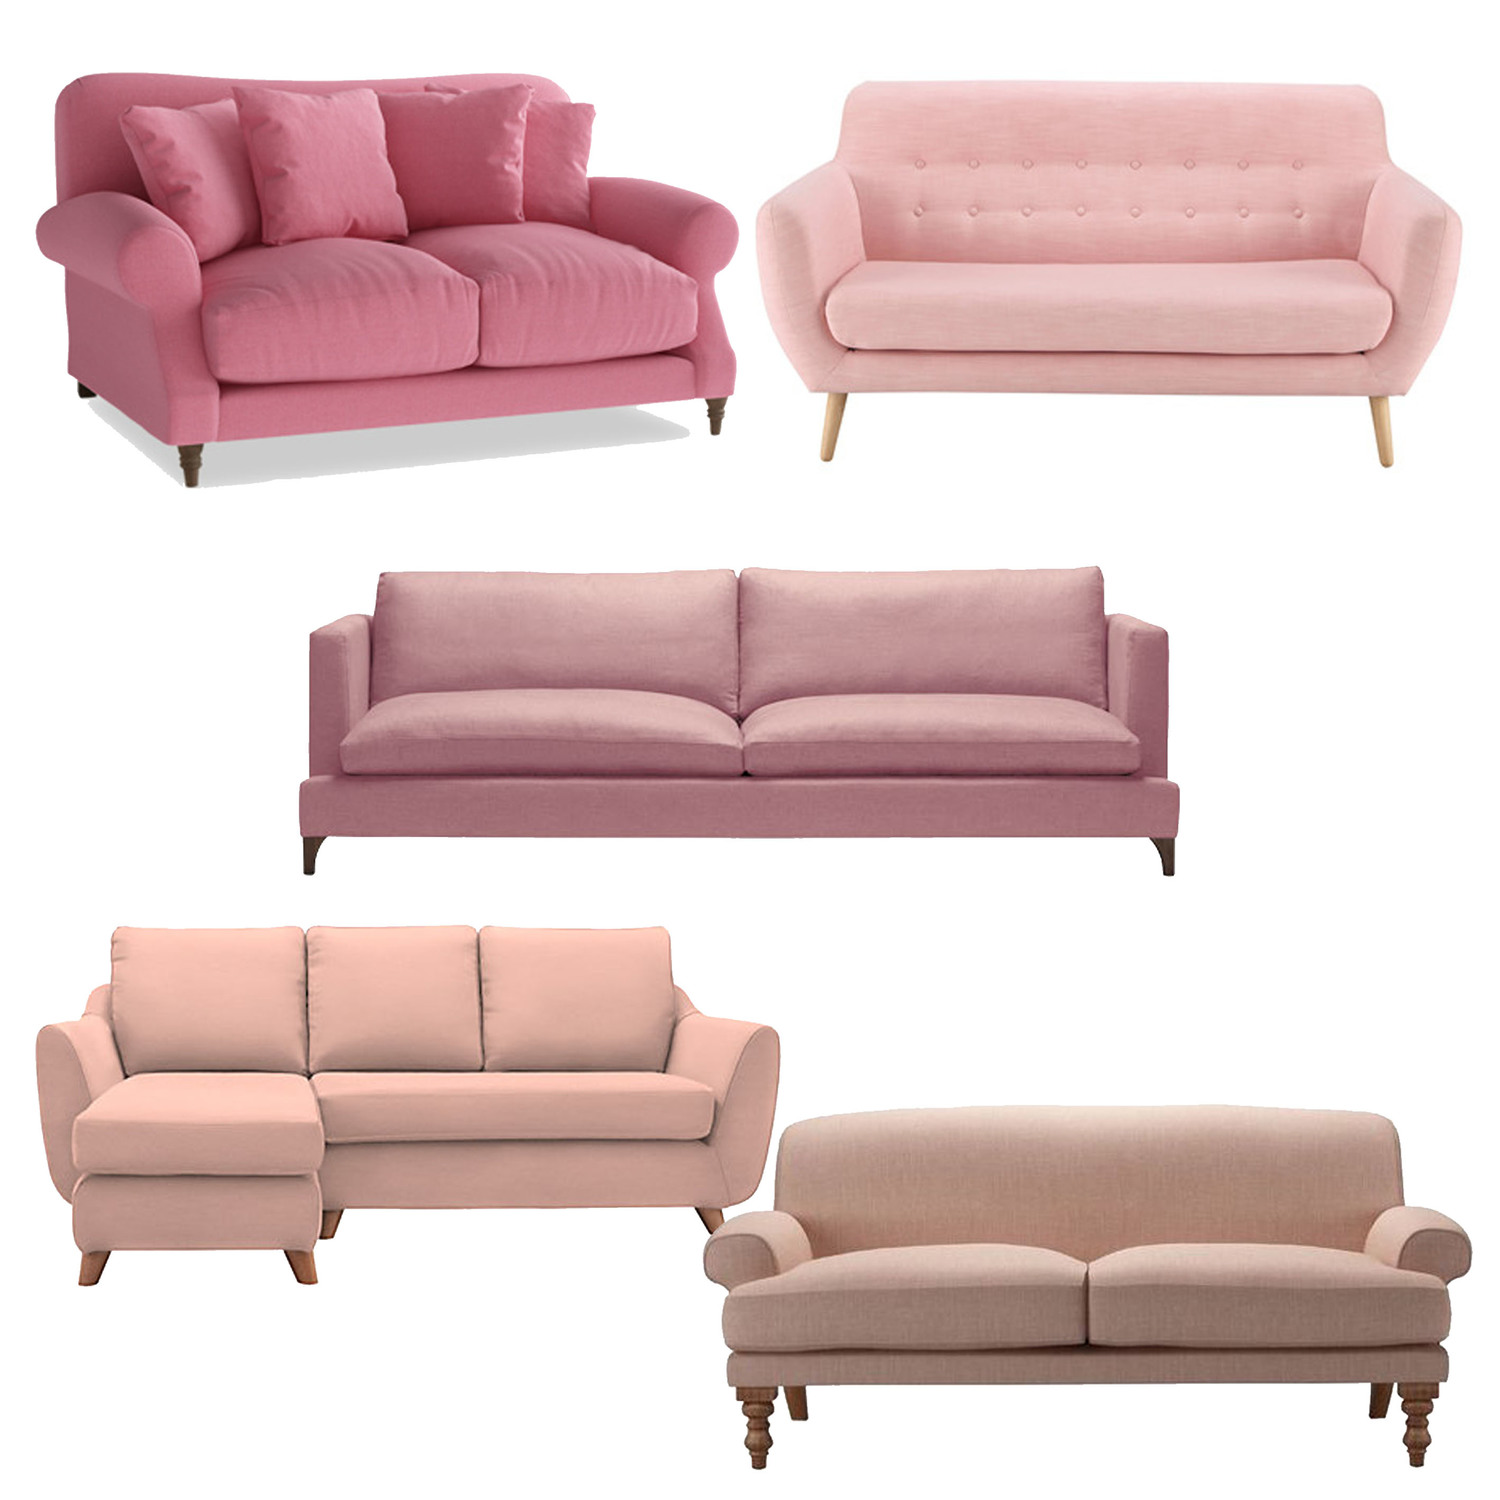 Cat sofa розовые. Texture of Sofa Pink material. Диван Family 125 розовый в комнате, как смотрится.